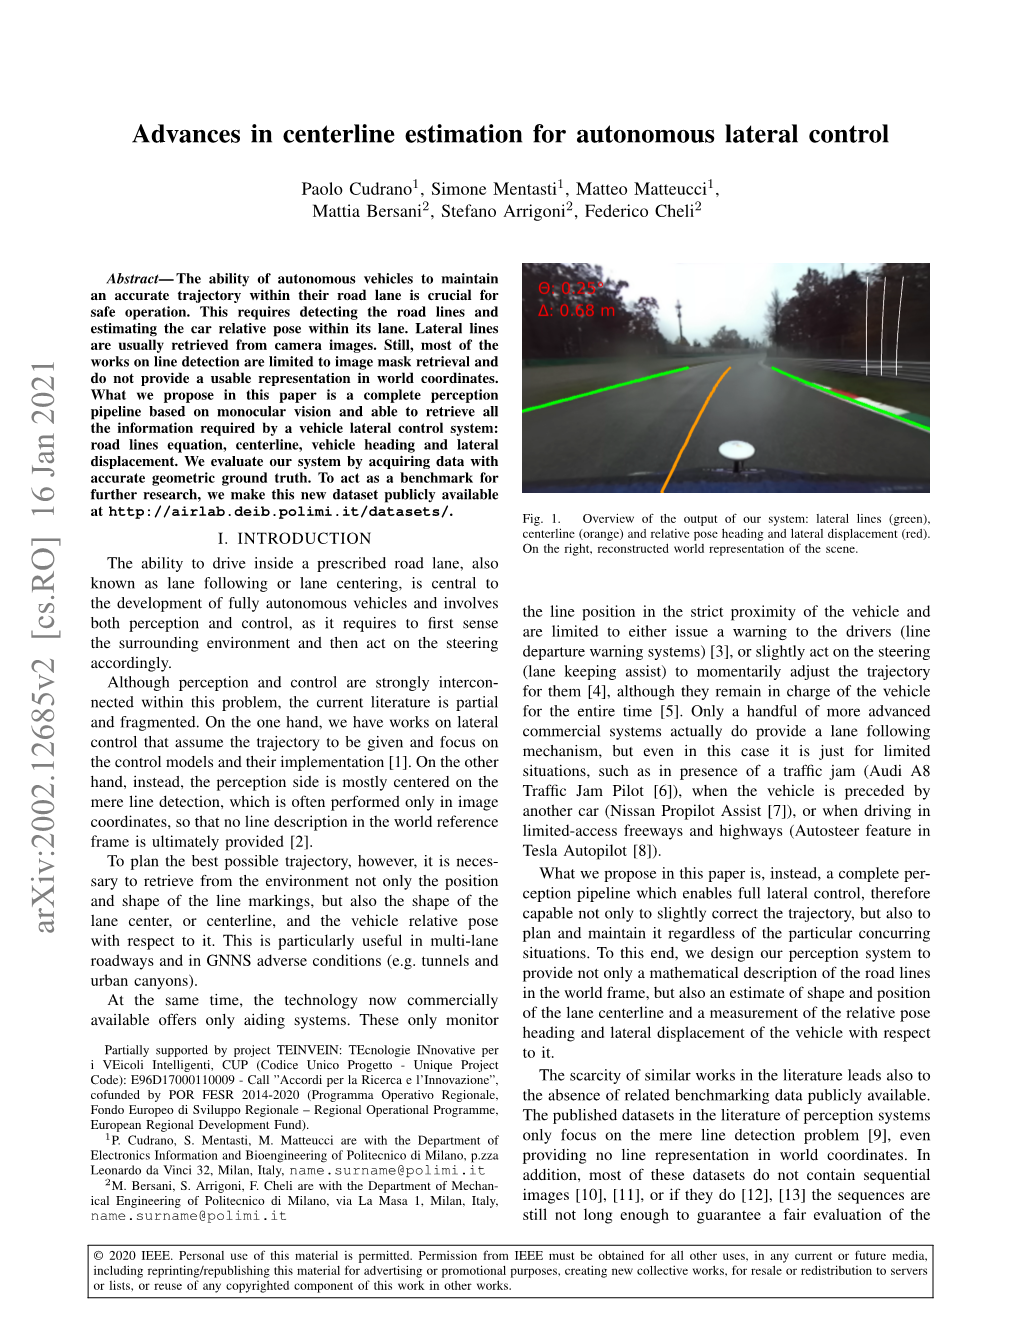 Advances in Centerline Estimation for Autonomous Lateral Control